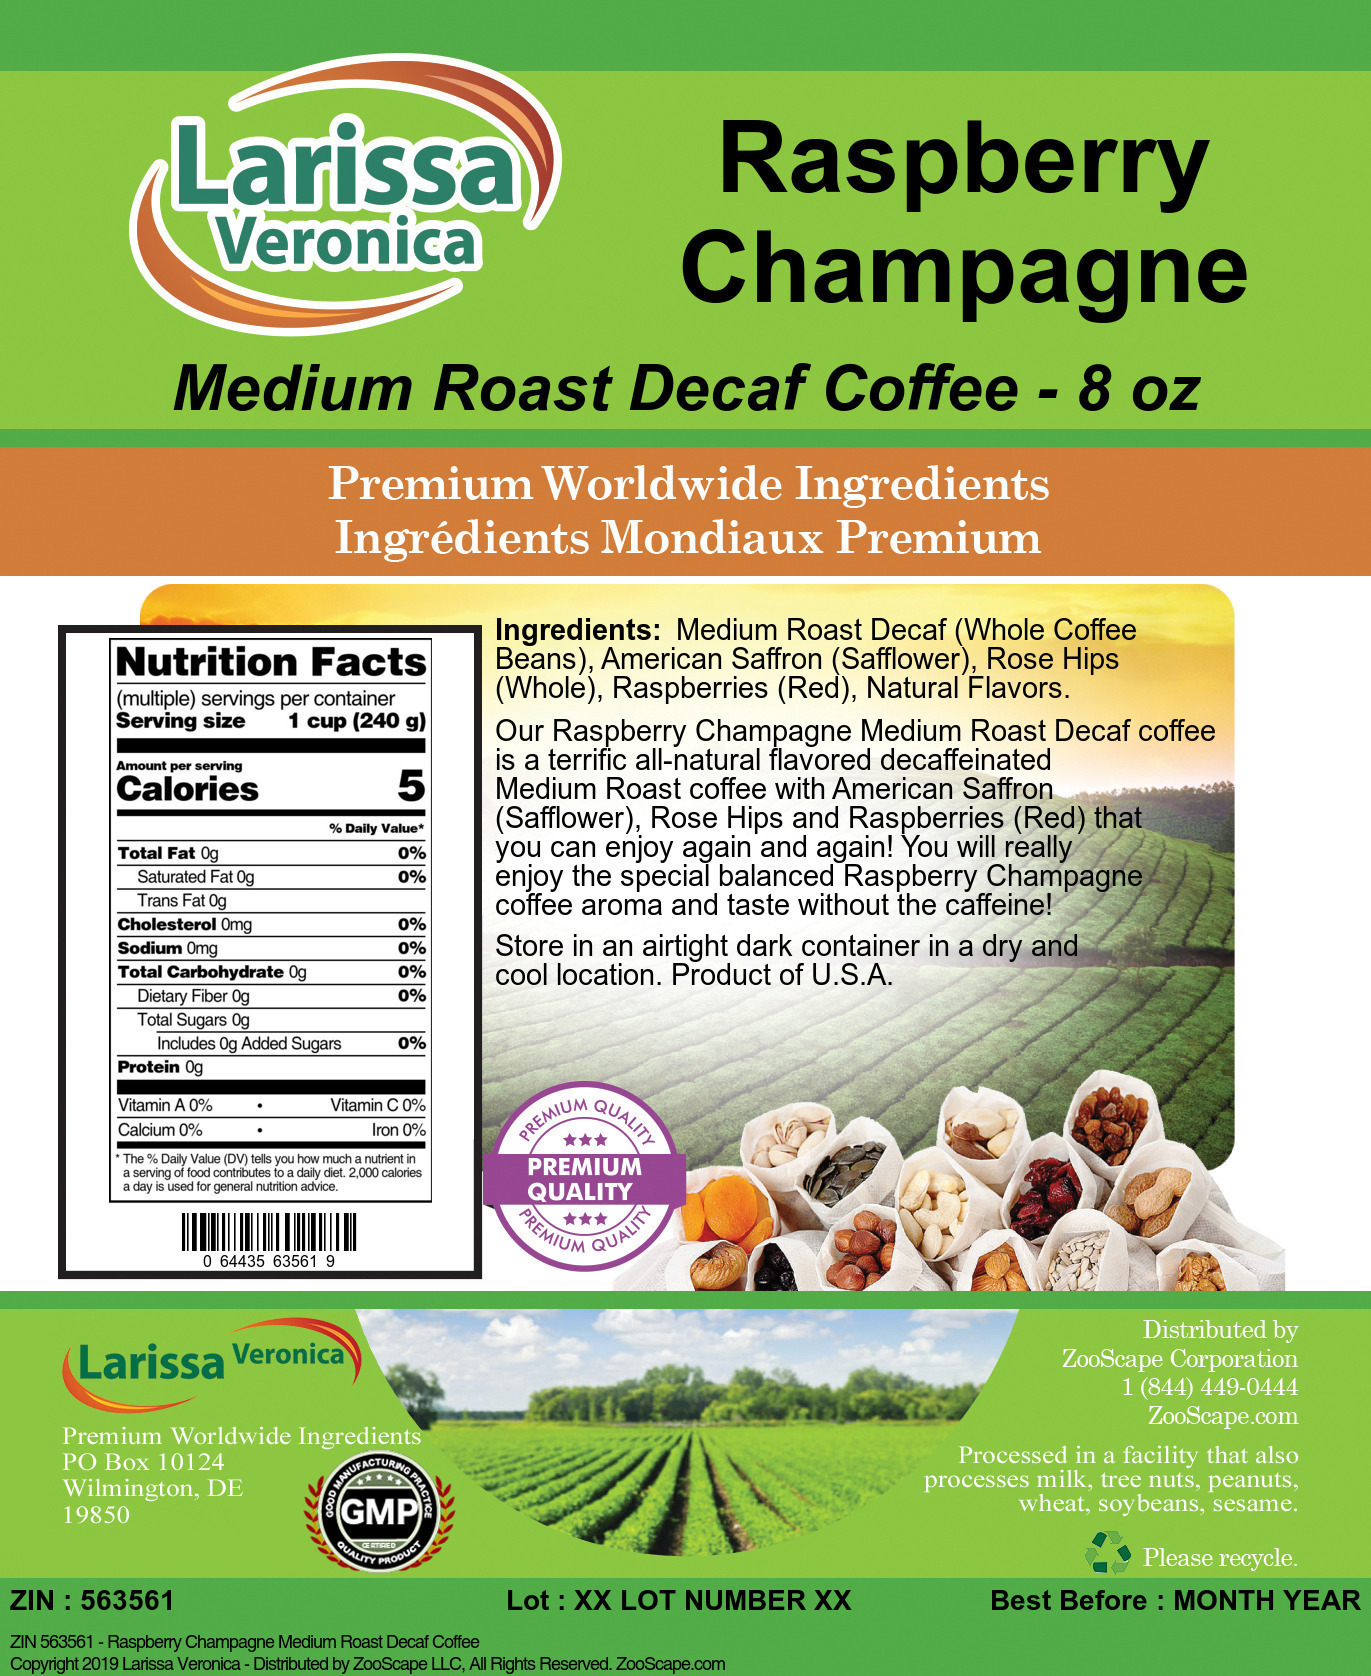 Raspberry Champagne Medium Roast Decaf Coffee - Label